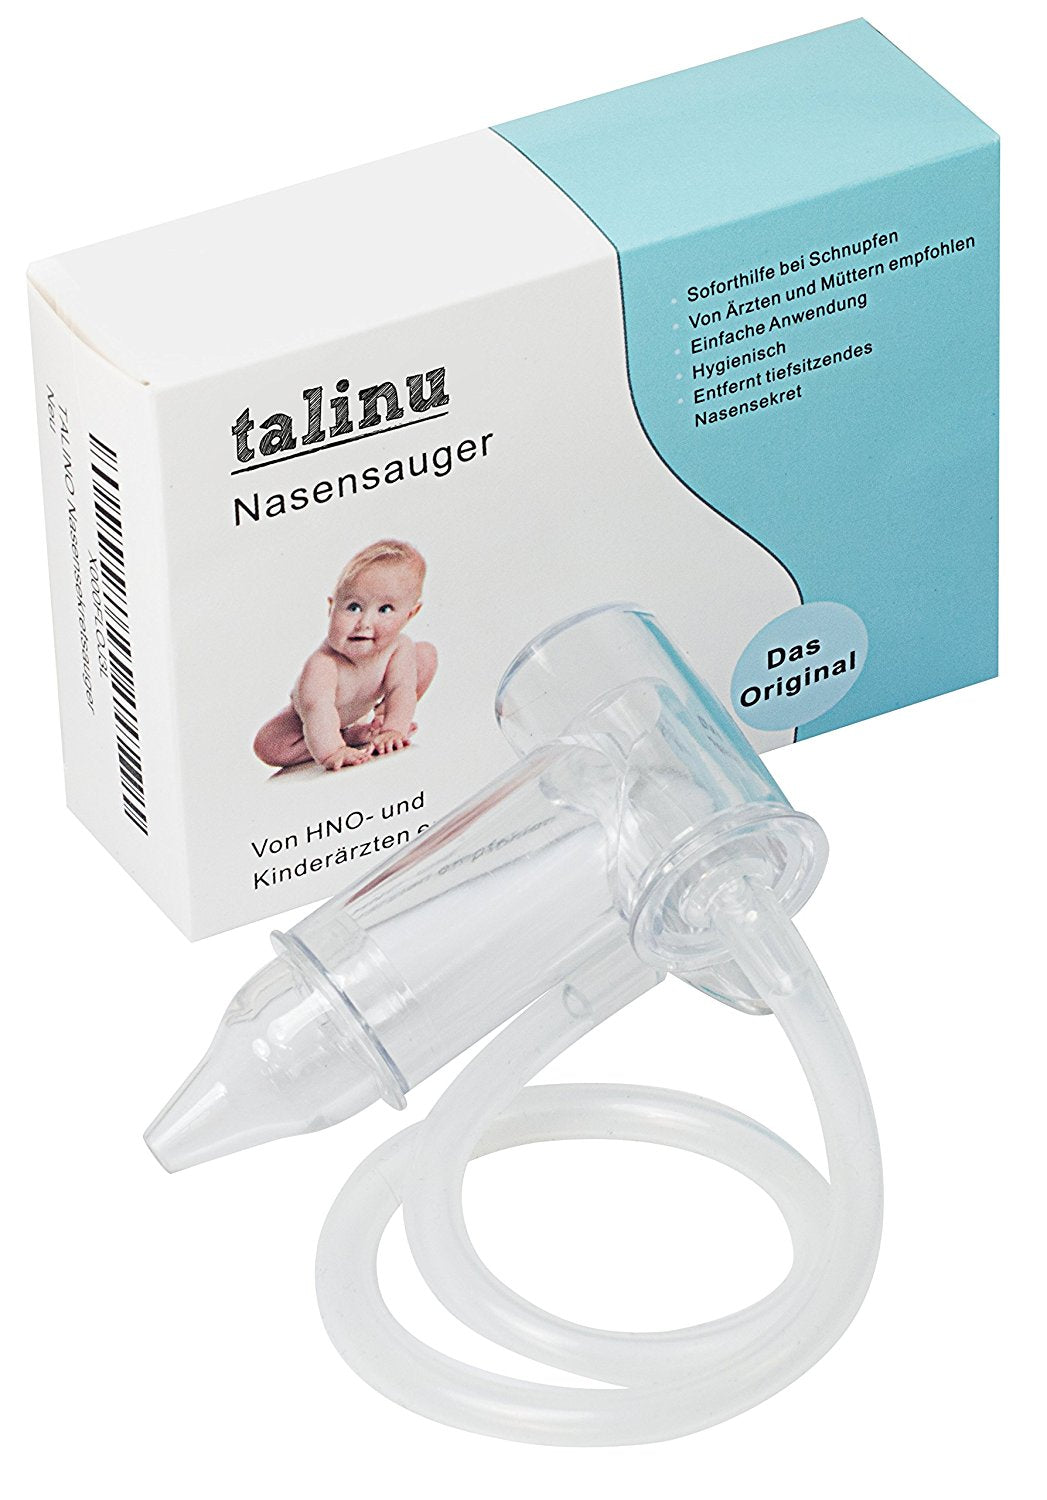 TALINU aspirateur de sécrétions nasales | avec 2 ans de garantie de satisfaction | mouche-bébé manuel, aspirateur nasal, aspirateur nasal pour bébés